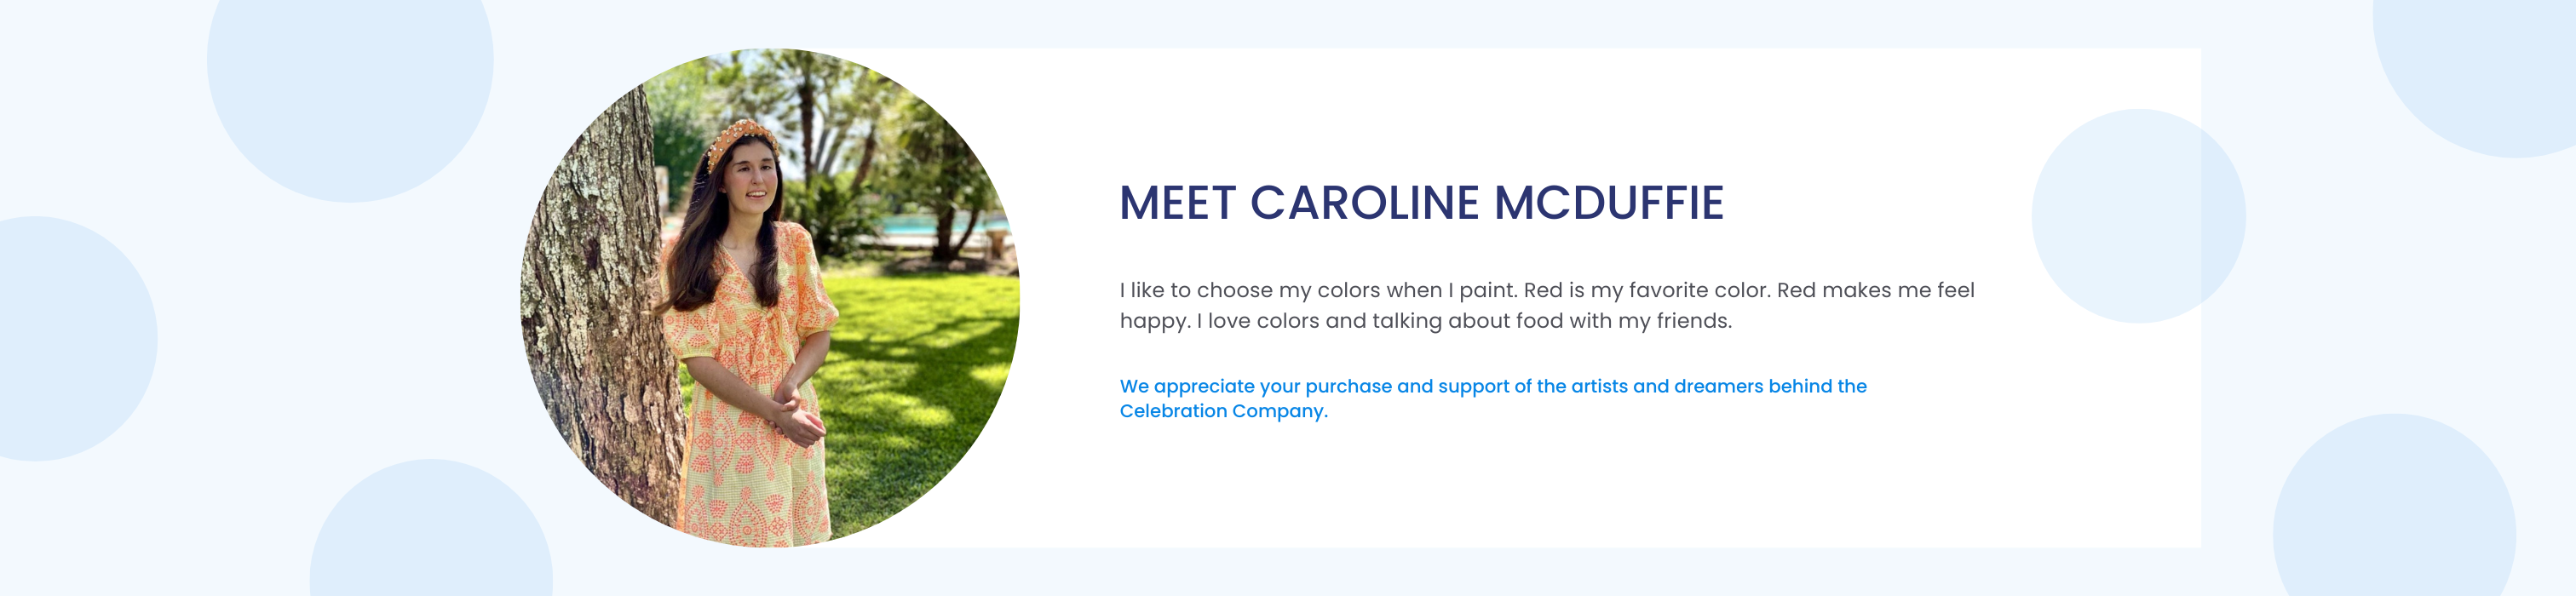 Meet Caroline McDuffie